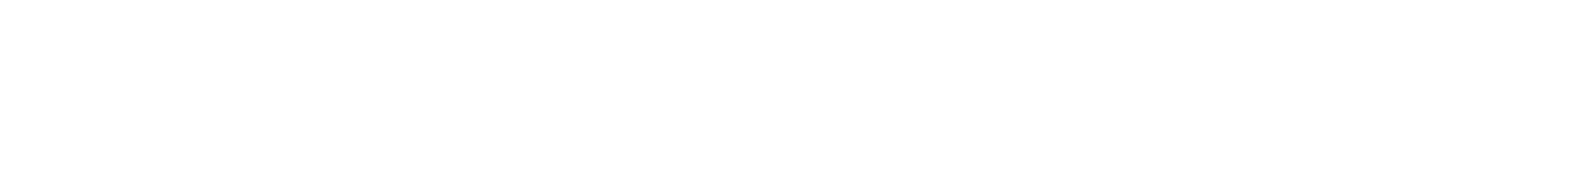 George Weston Logo groß für dunkle Hintergründe (transparentes PNG)